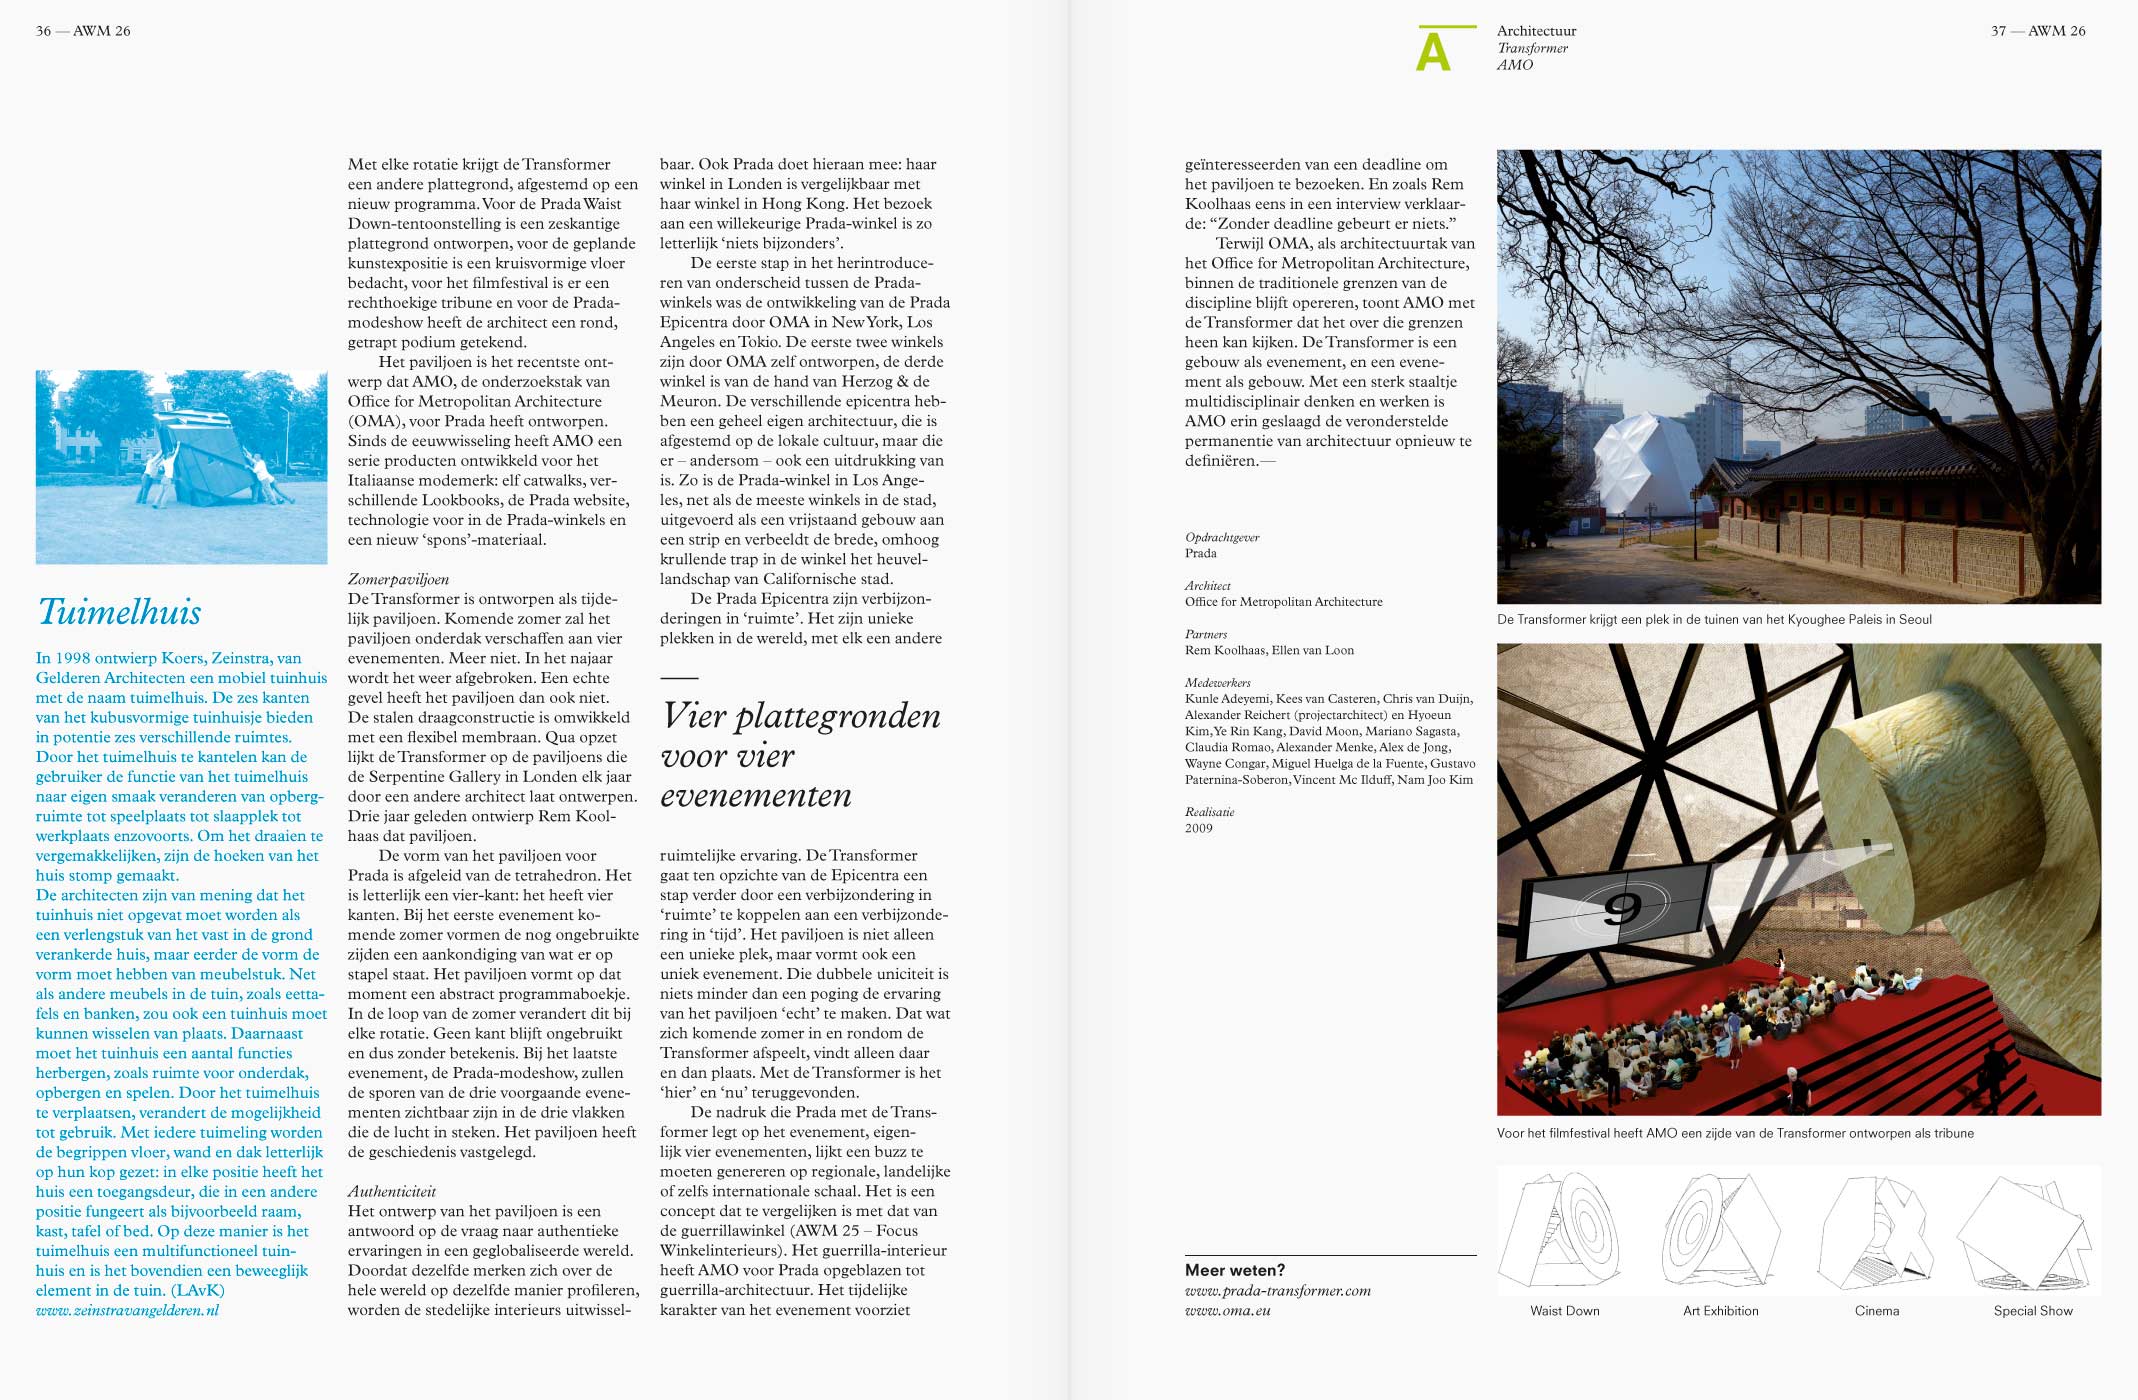 AWM, magazine, architecture, editorial design